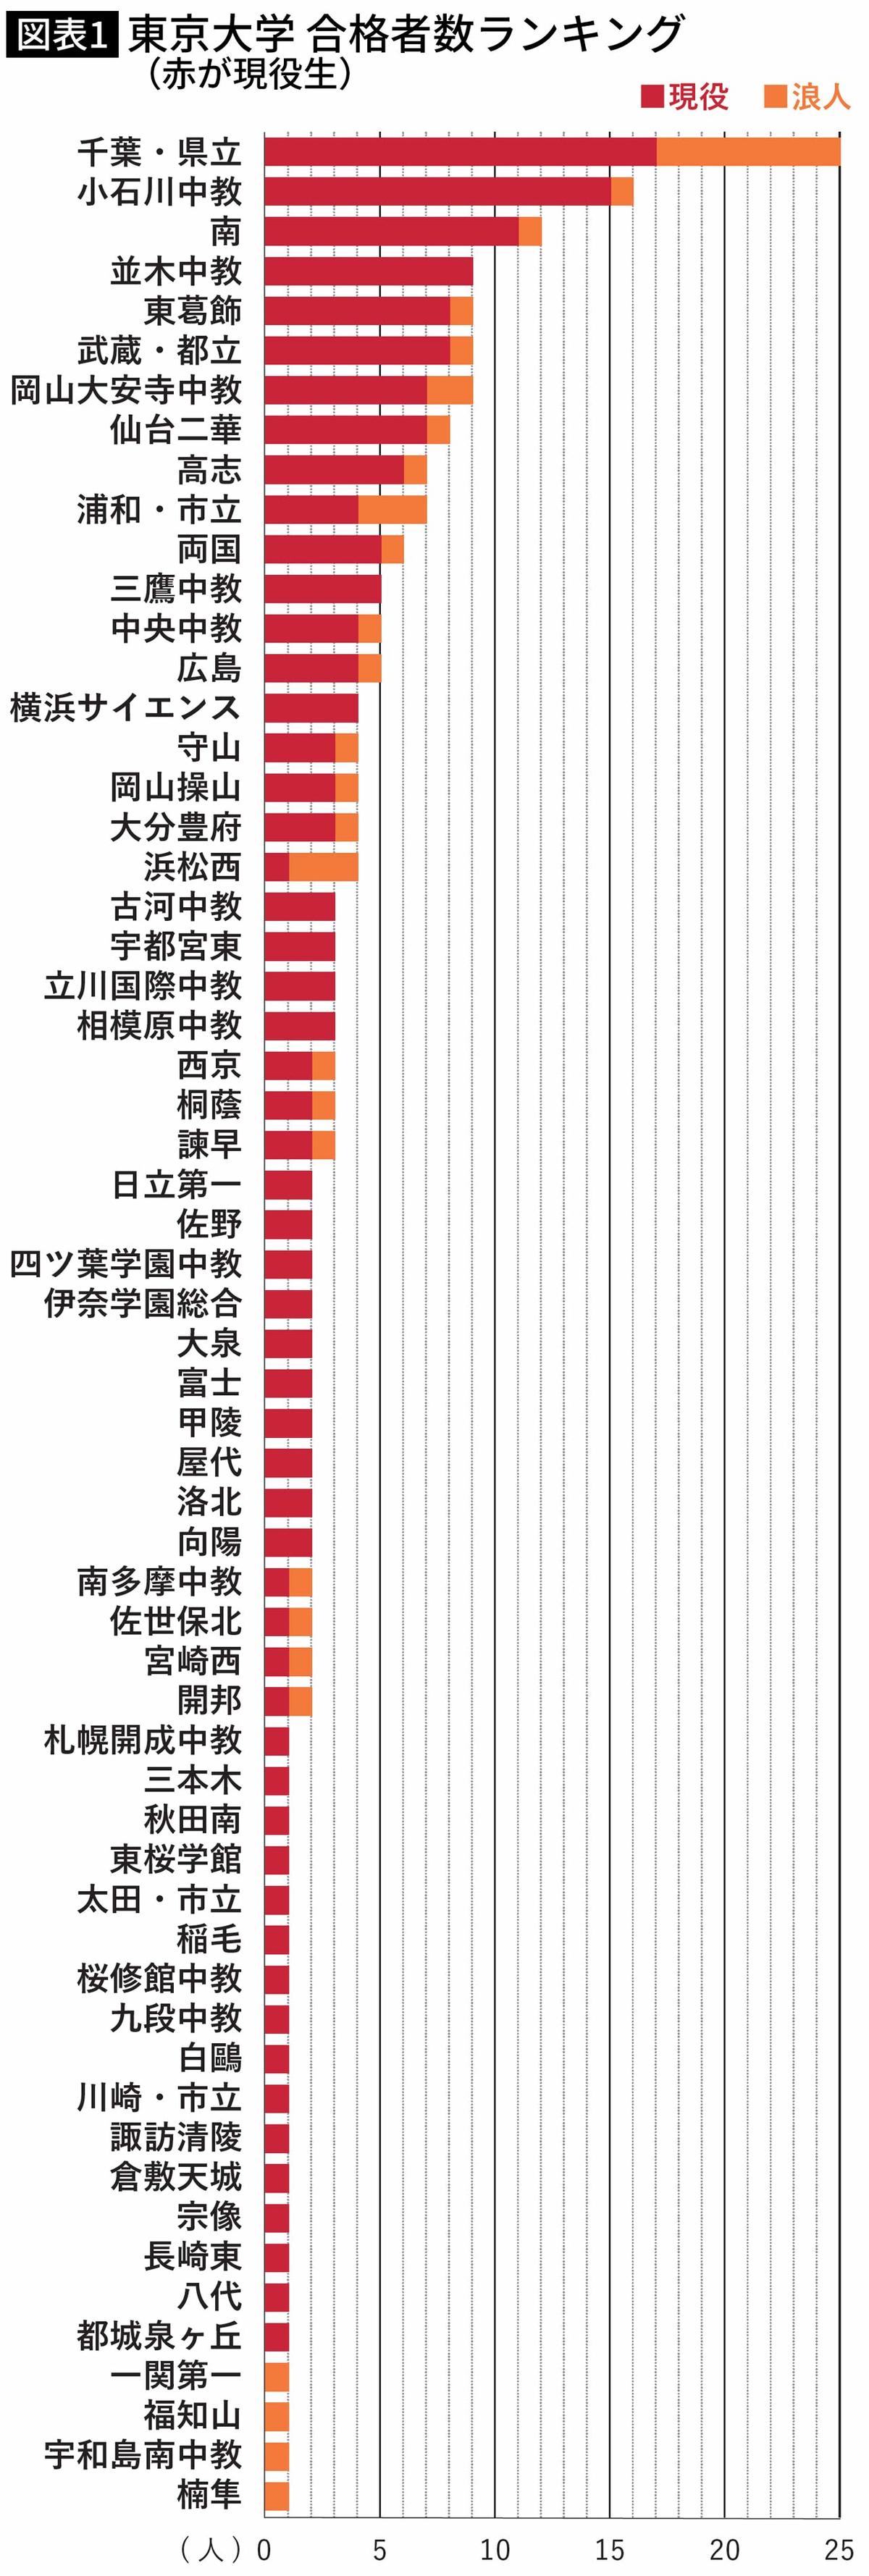 【図表】東京大学 合格者数ランキング （赤が現役生）